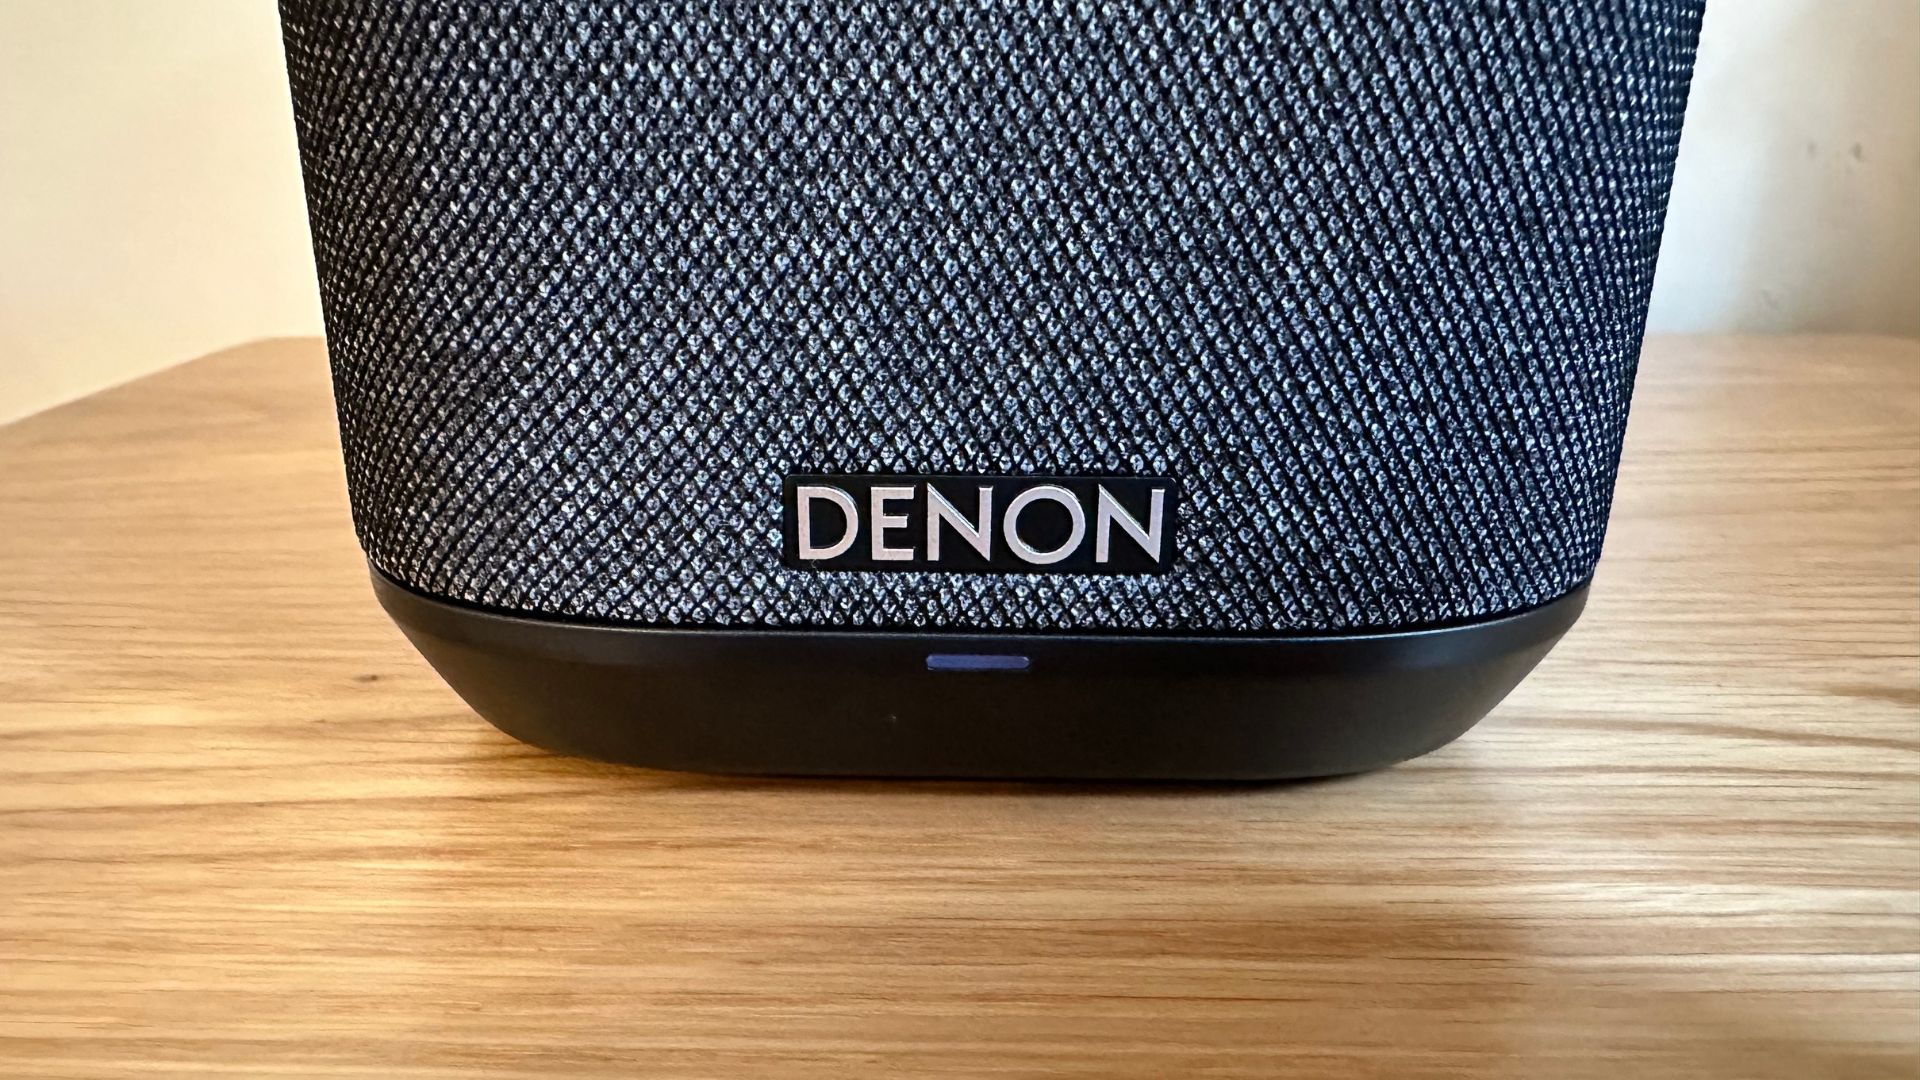 Denon Wireless Speaker 150 gros plan du logo Denon sur le devant de l'enceinte